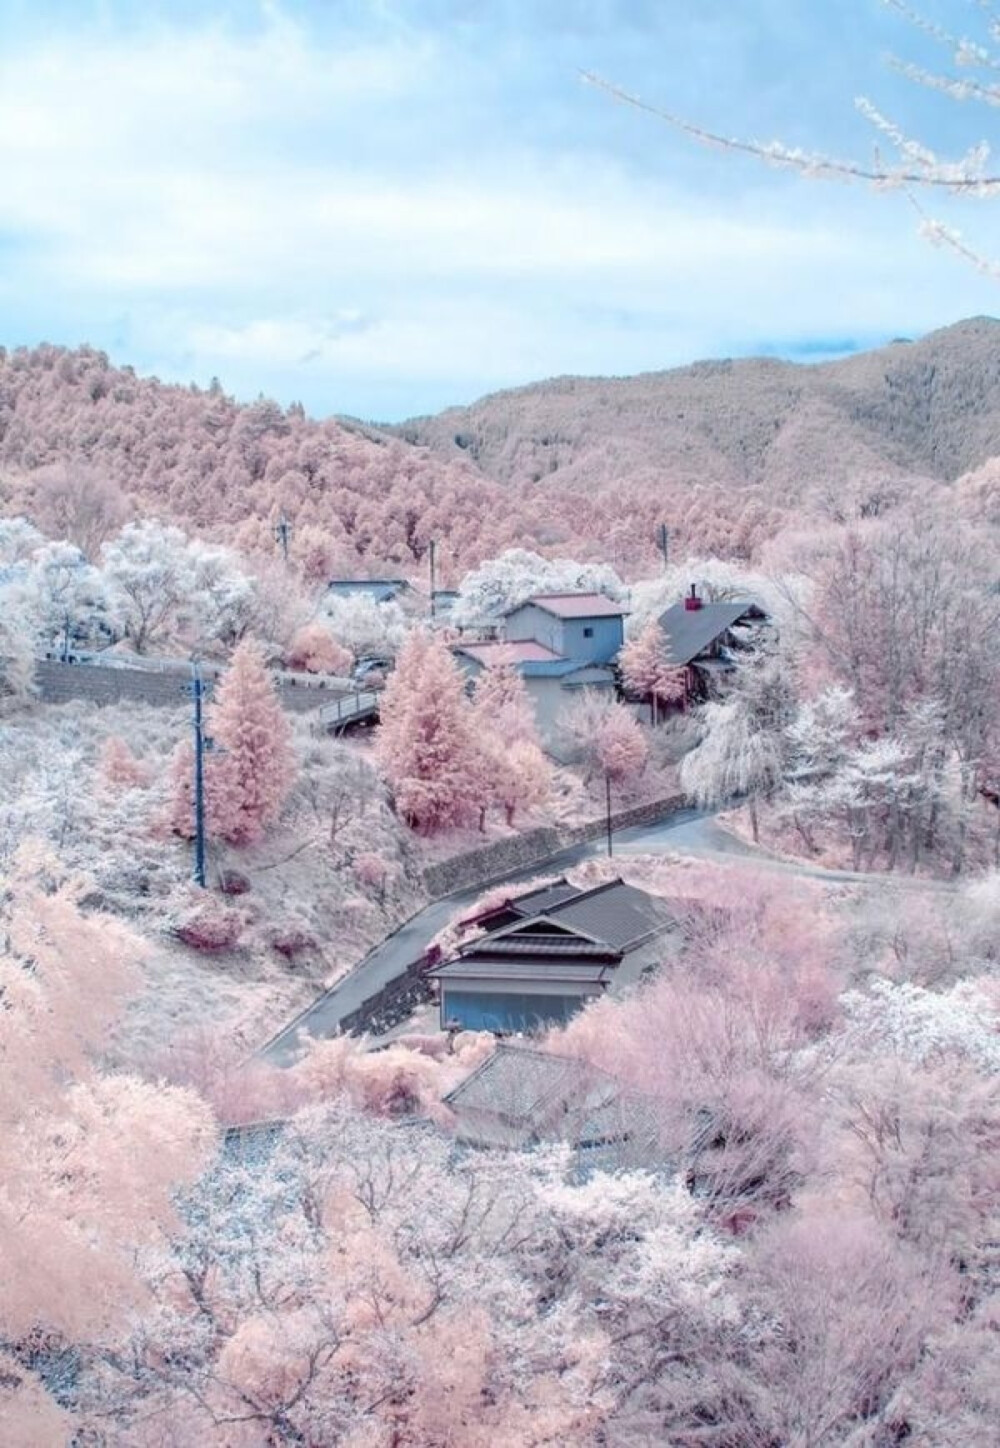 日本奈良县吉野山以樱花而闻名，有日本第一之誉，春天来时，粉红色的樱花开满山野，被称为“吉野千本樱”。每年的4月份，樱花按“山麓千棵”、“山腰千棵”、“山上千棵”、“山里千棵”的顺序依次盛开，场面壮观。